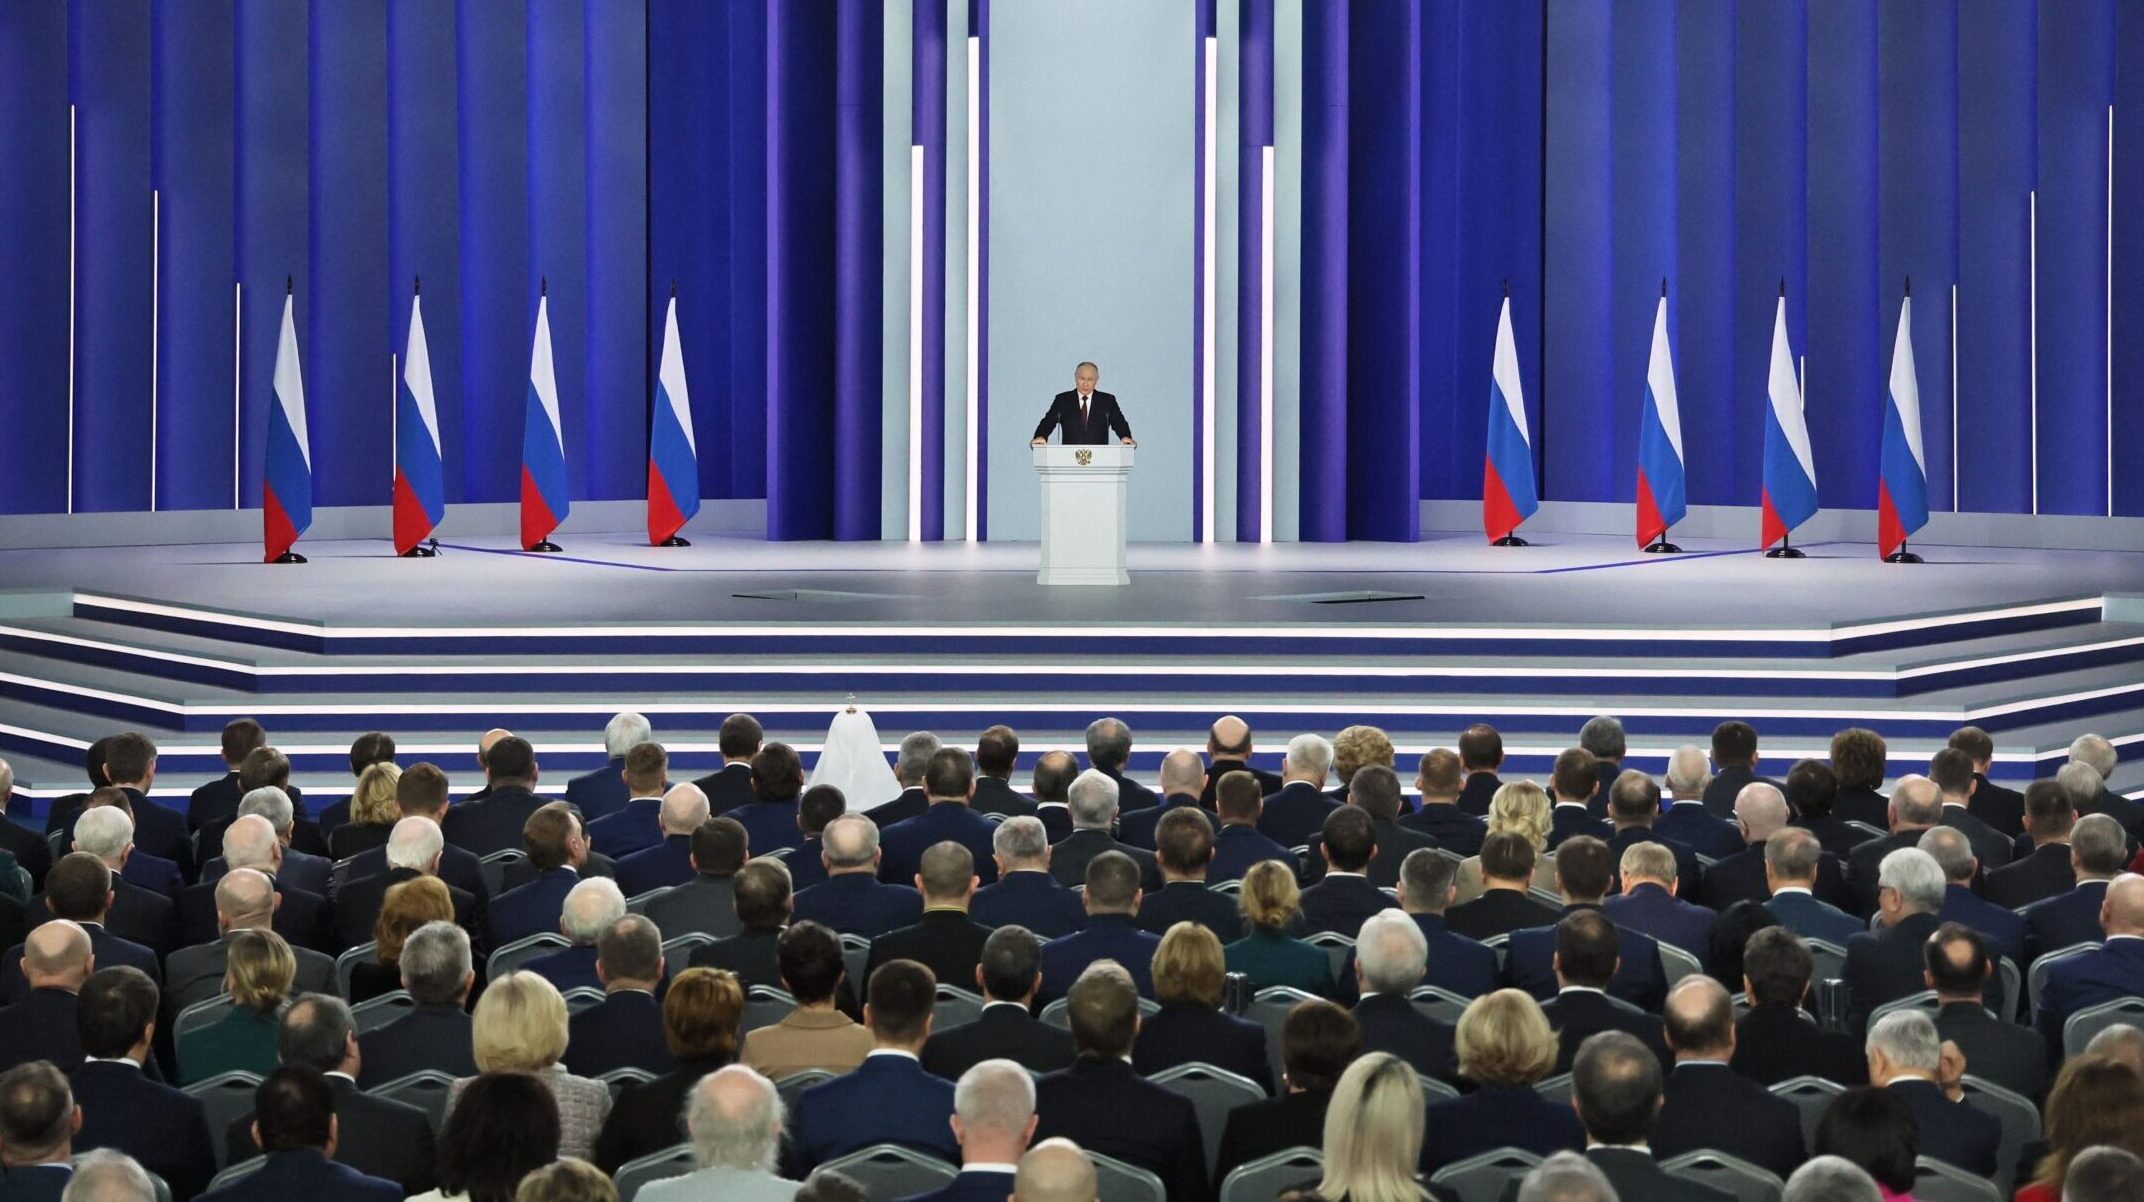 Putin Slams West, Defends Ukraine War in State of Nation Speech